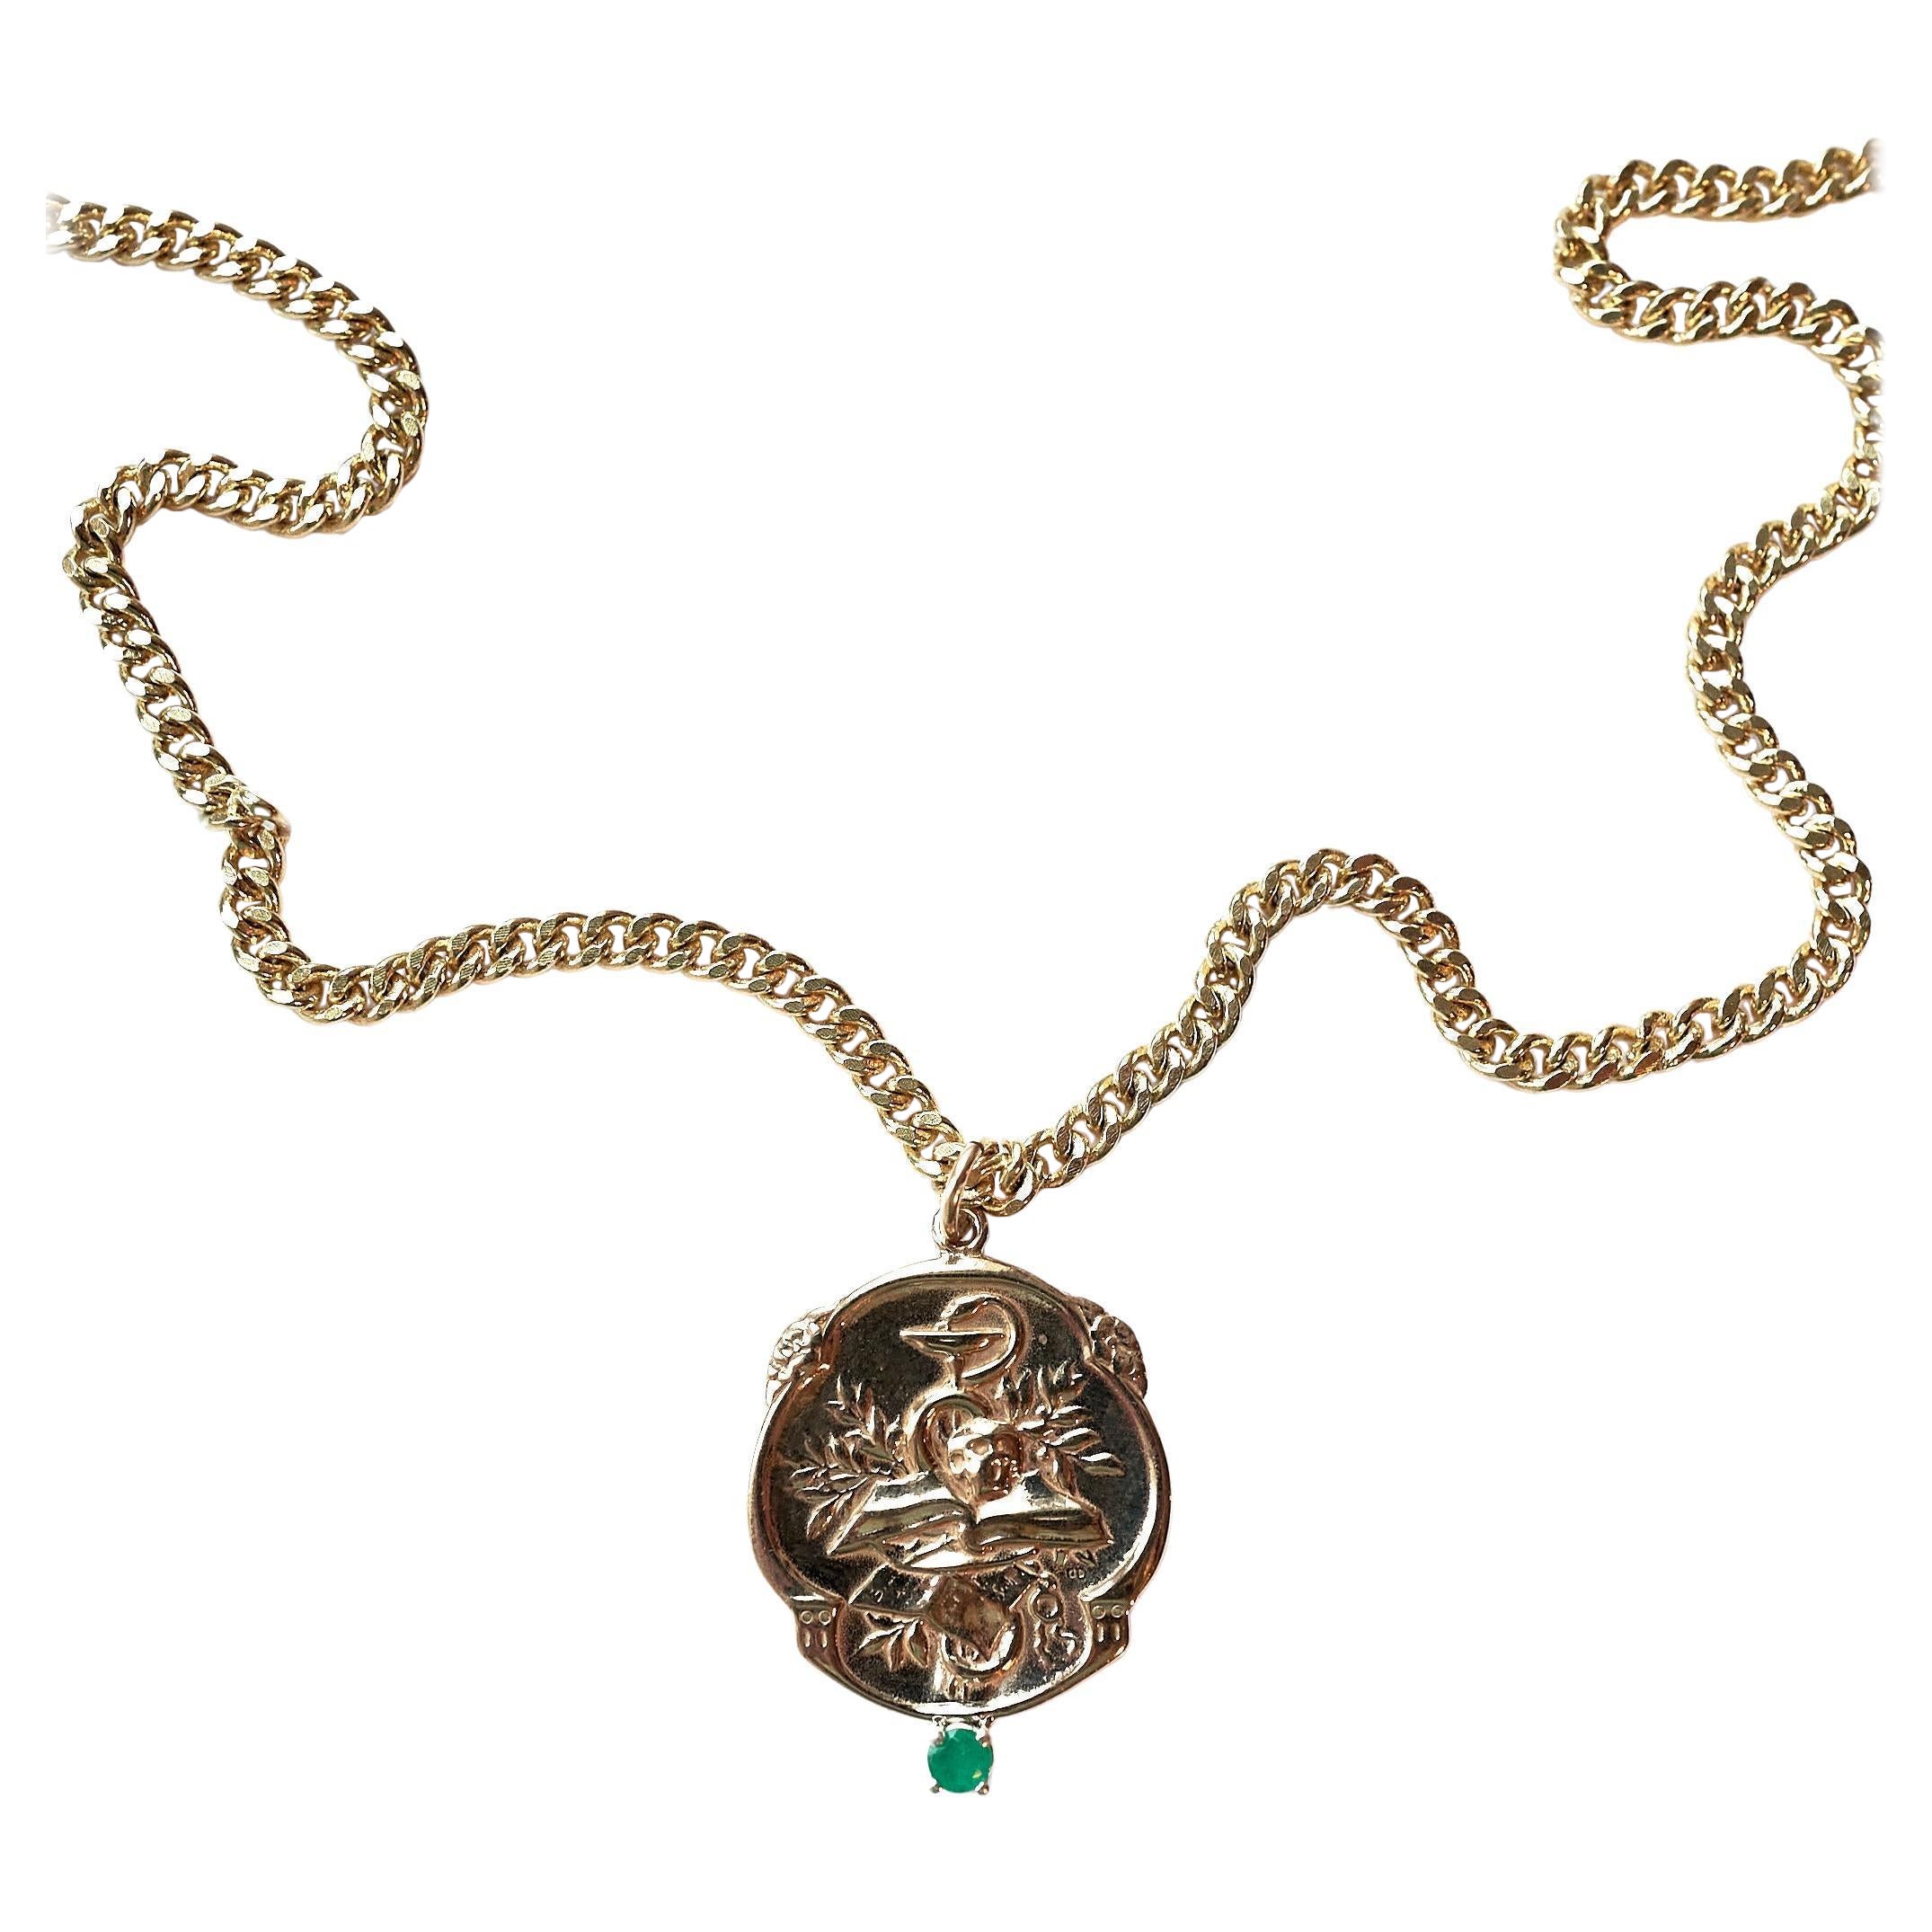 Emerald Victorian Style Memento Mori Medal Necklace Skull Chain